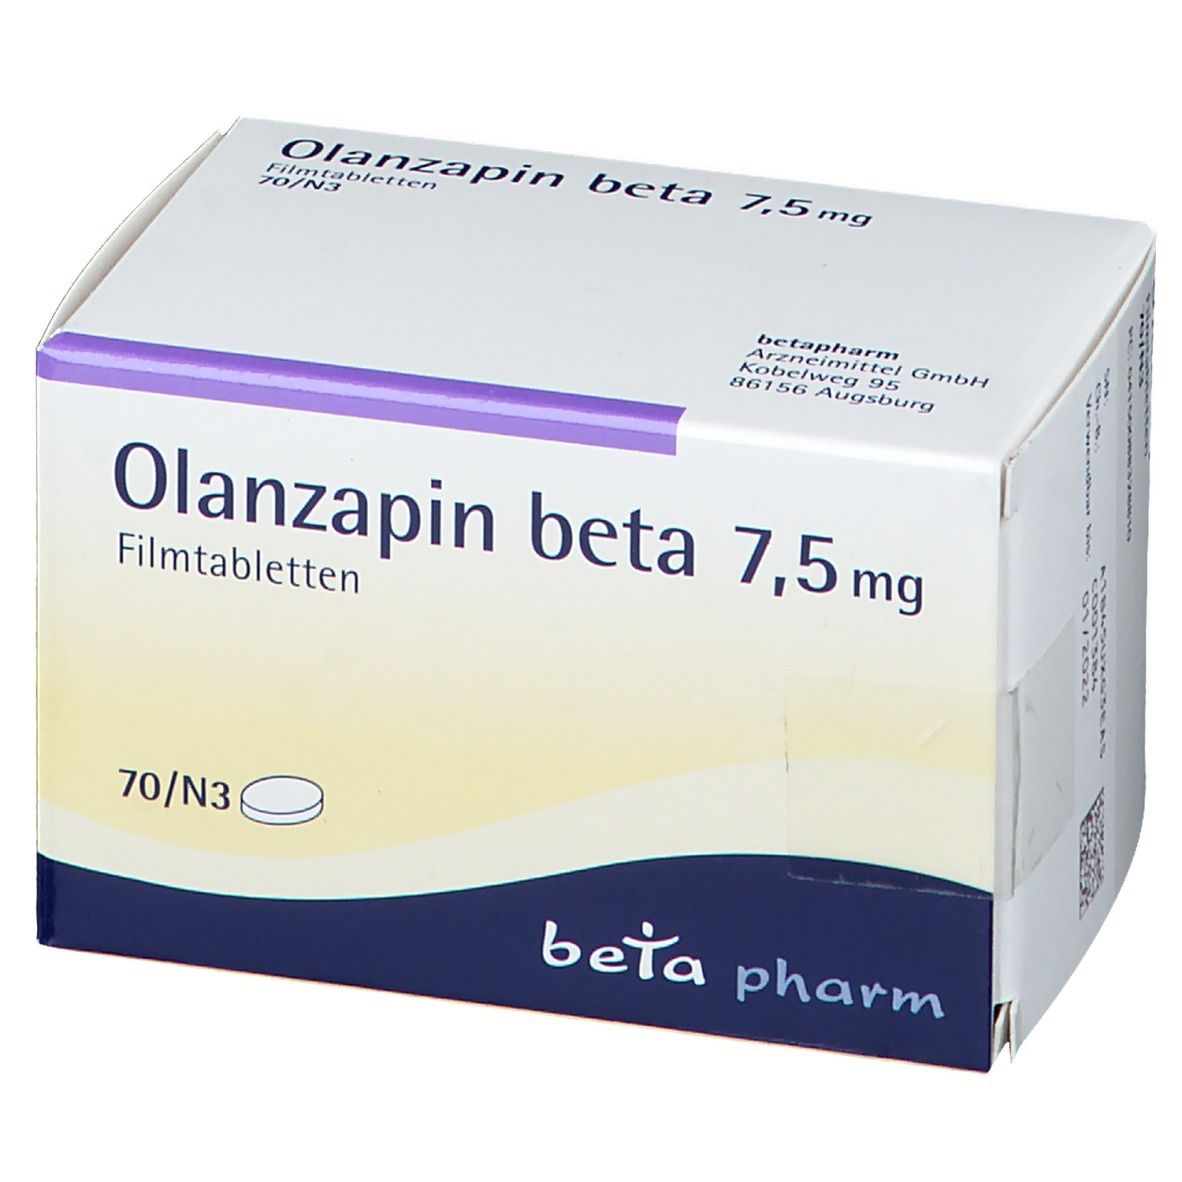 Olanzapin beta 7,5 mg